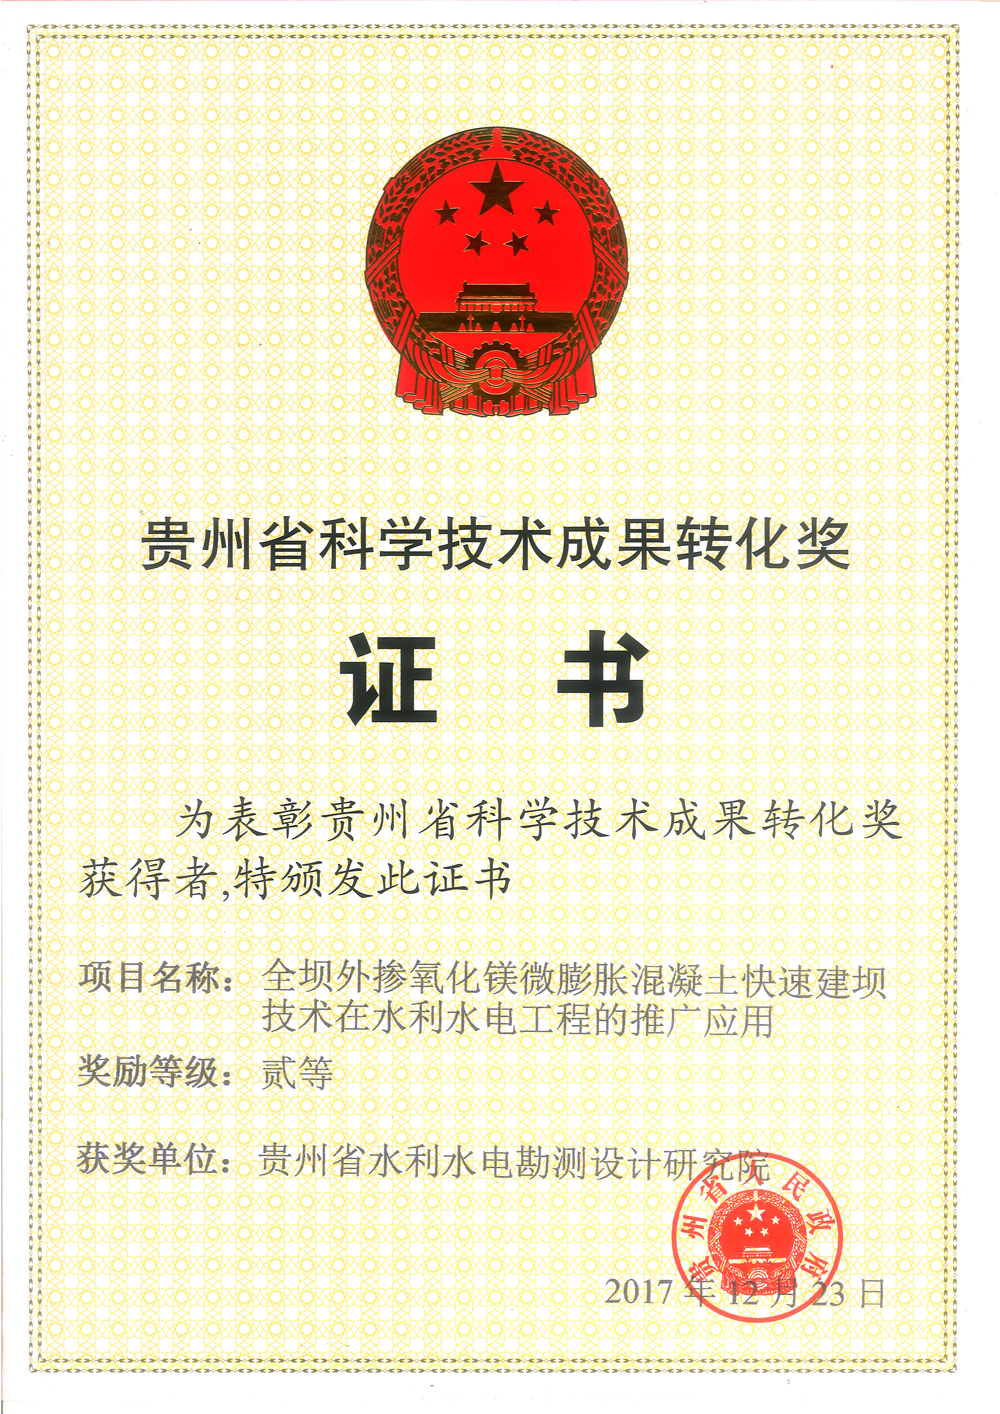 氧化镁获奖证书--贵州省水利水电勘测设计研究院